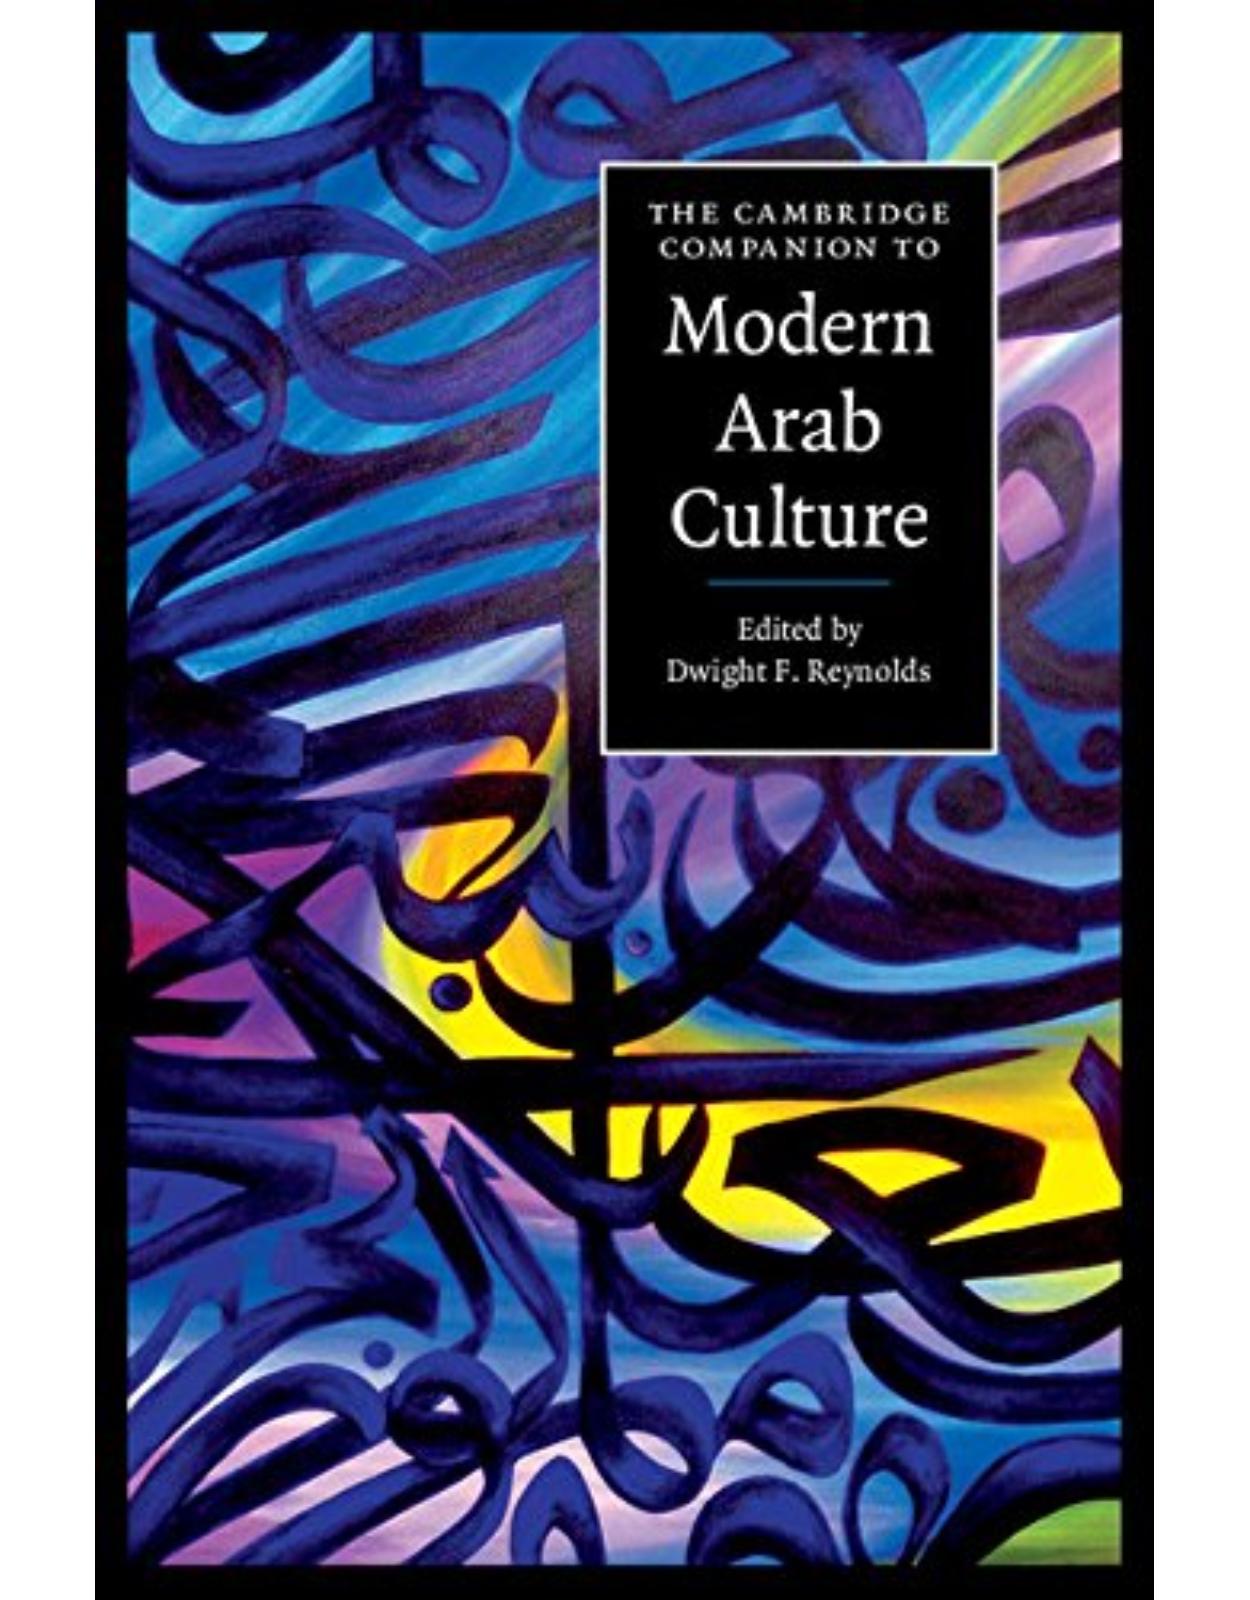 The Cambridge Companion to Modern Arab Culture (Cambridge Companions to Culture)